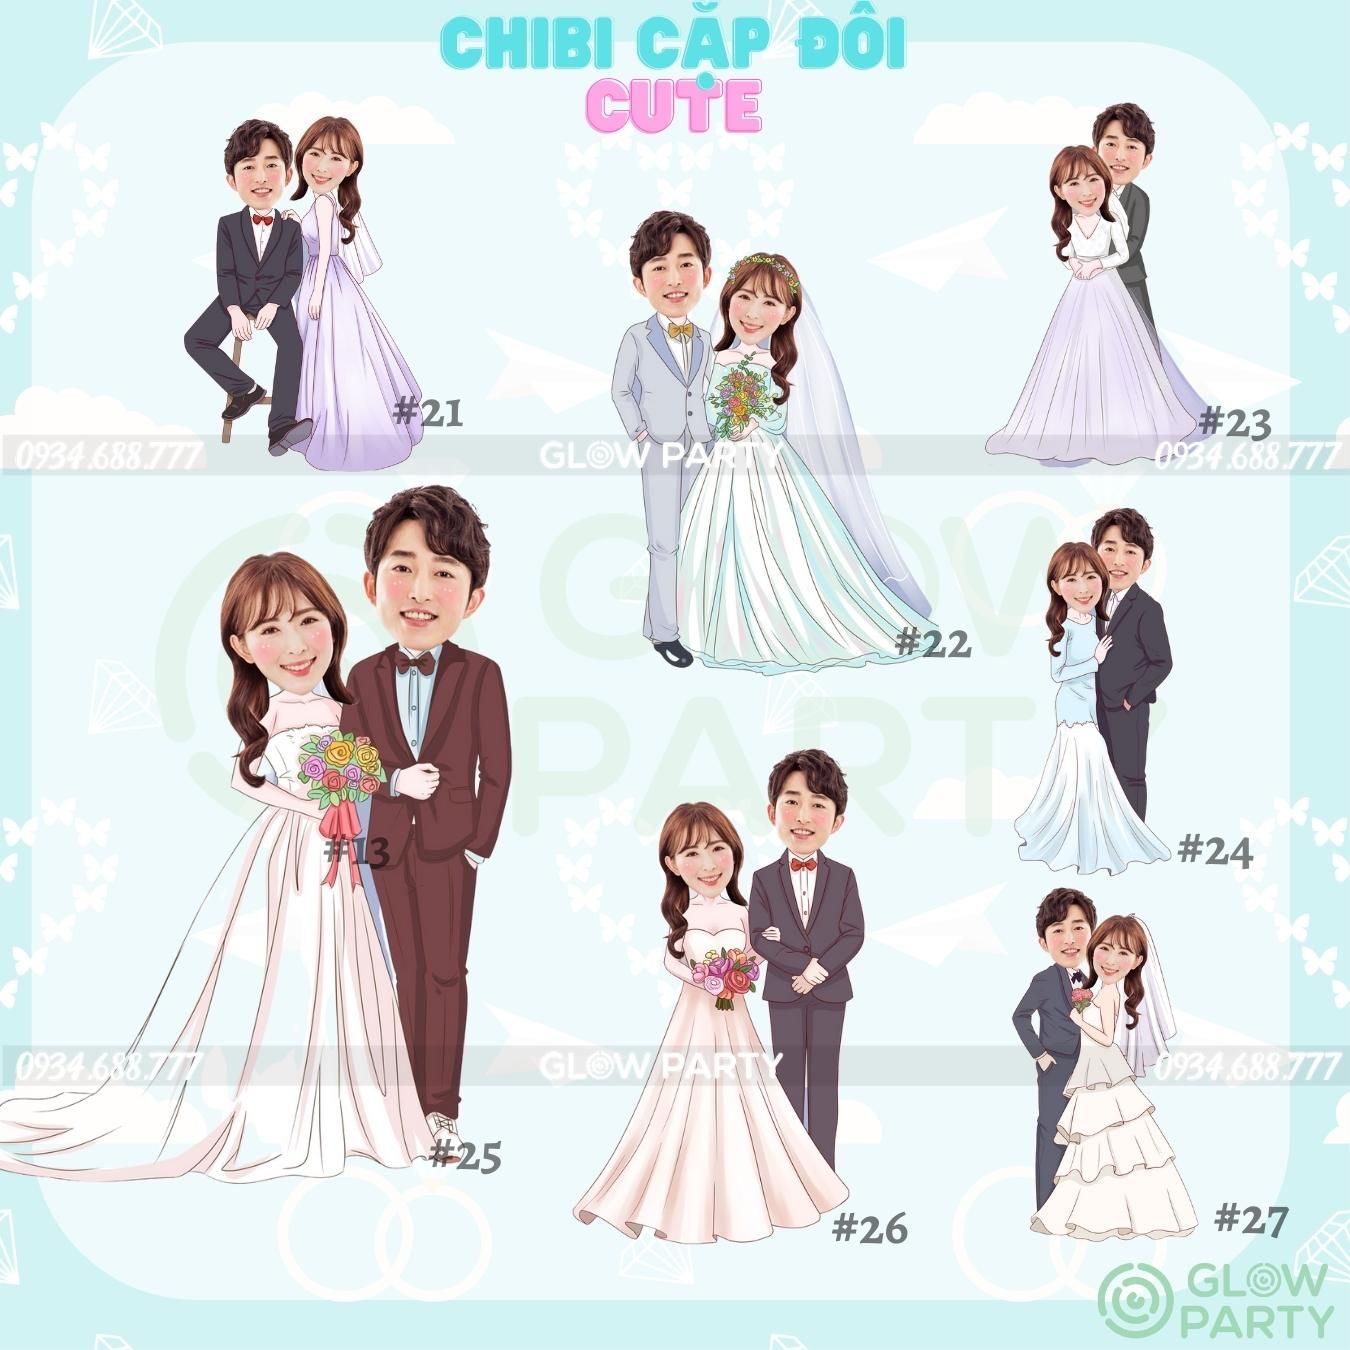 Chibi cưới - set 1 (chọn mẫu)